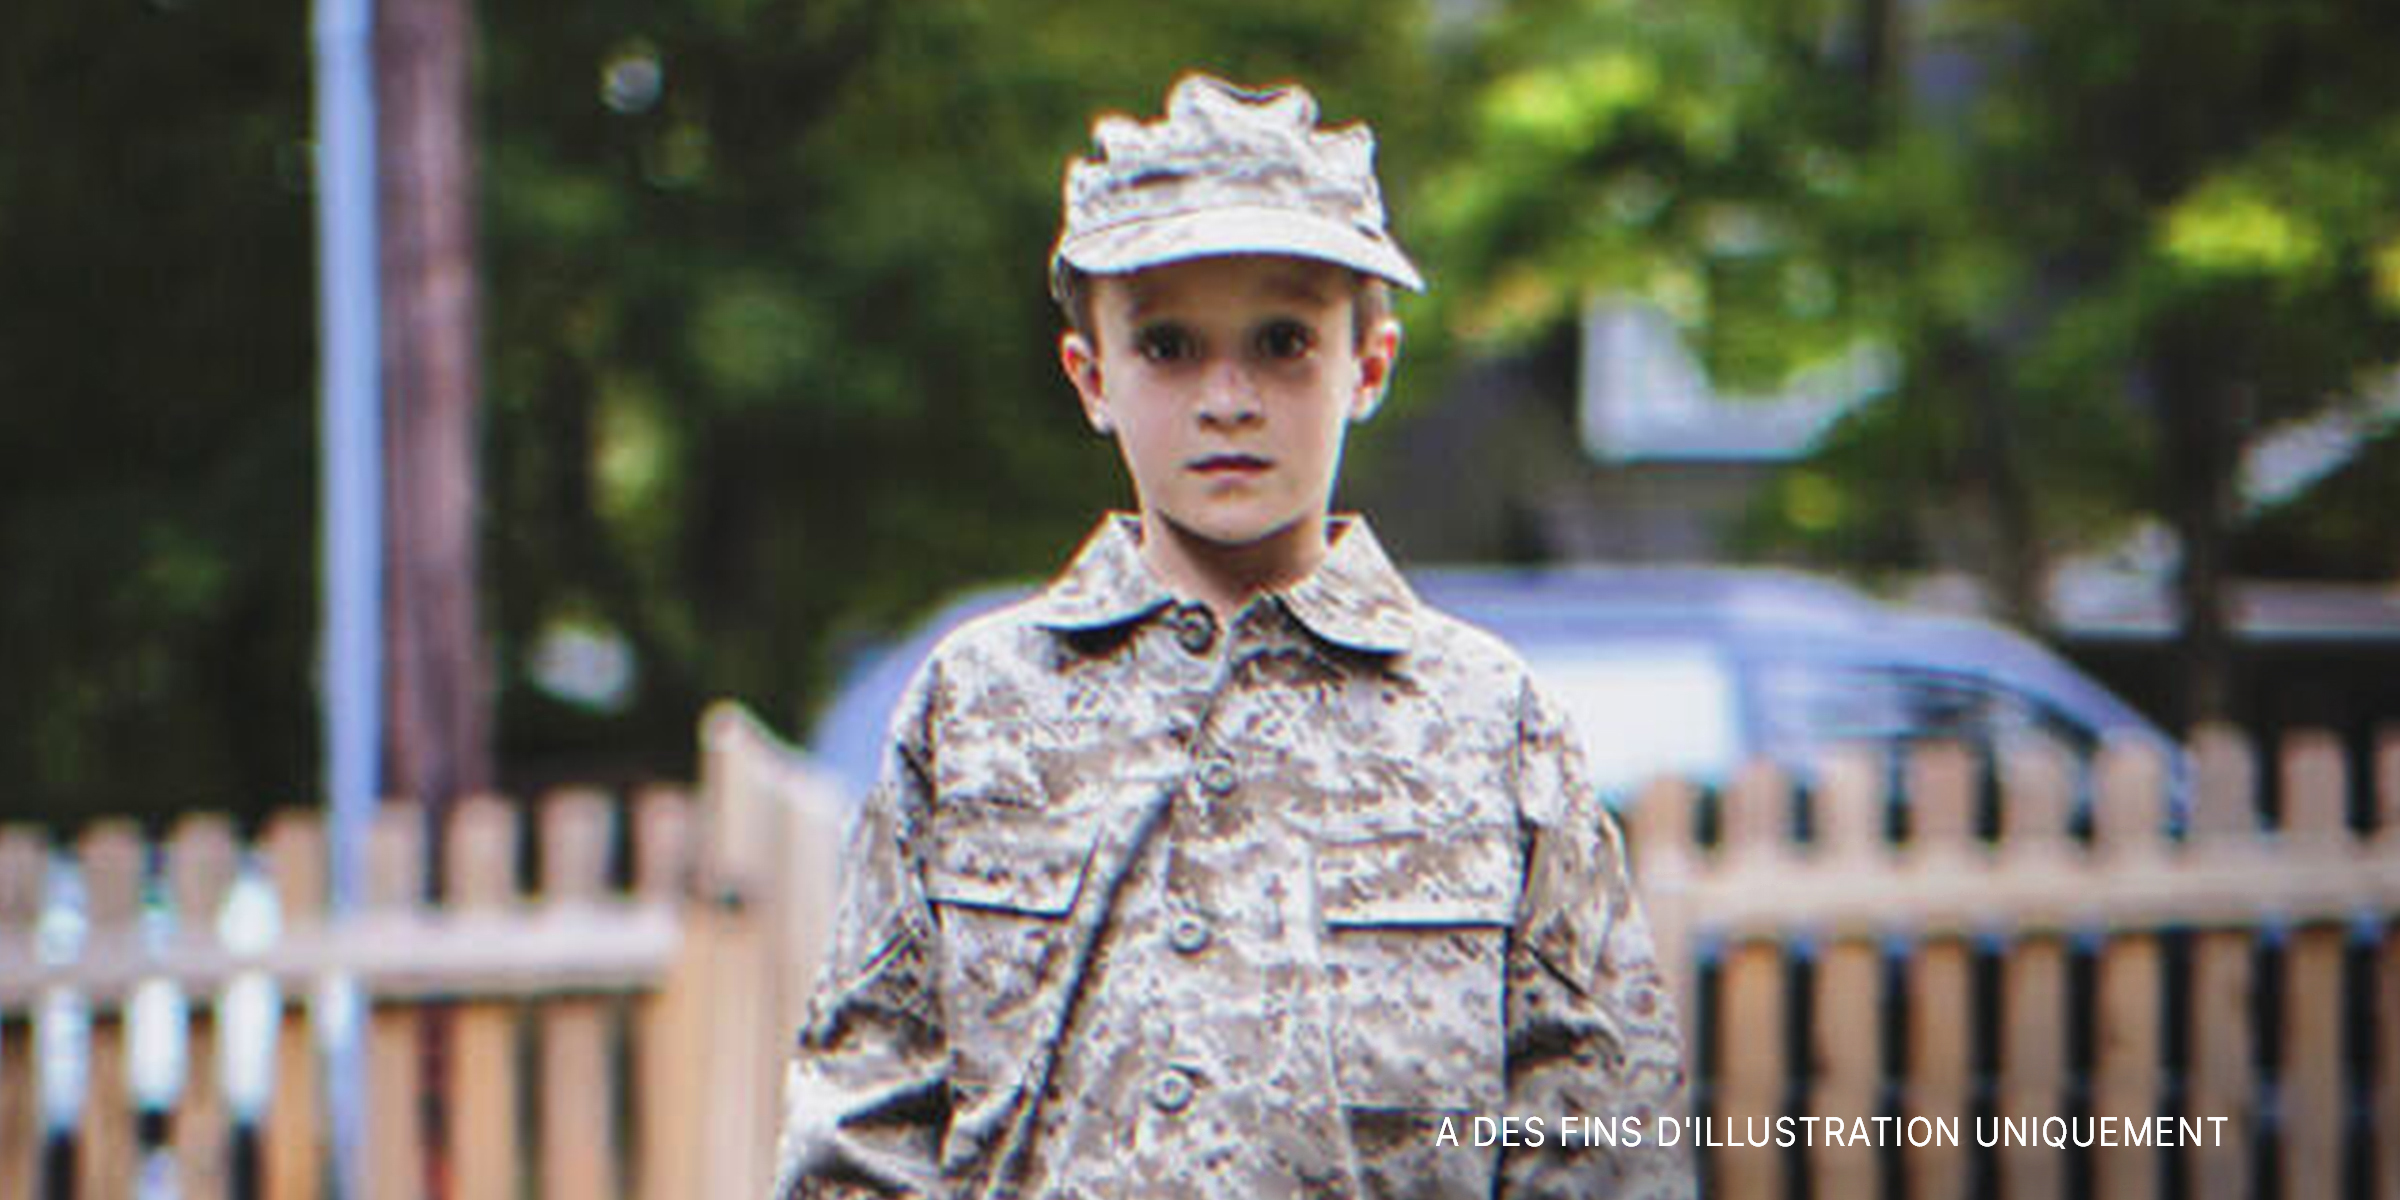 Garçon en uniforme militaire. | Source : Getty Images